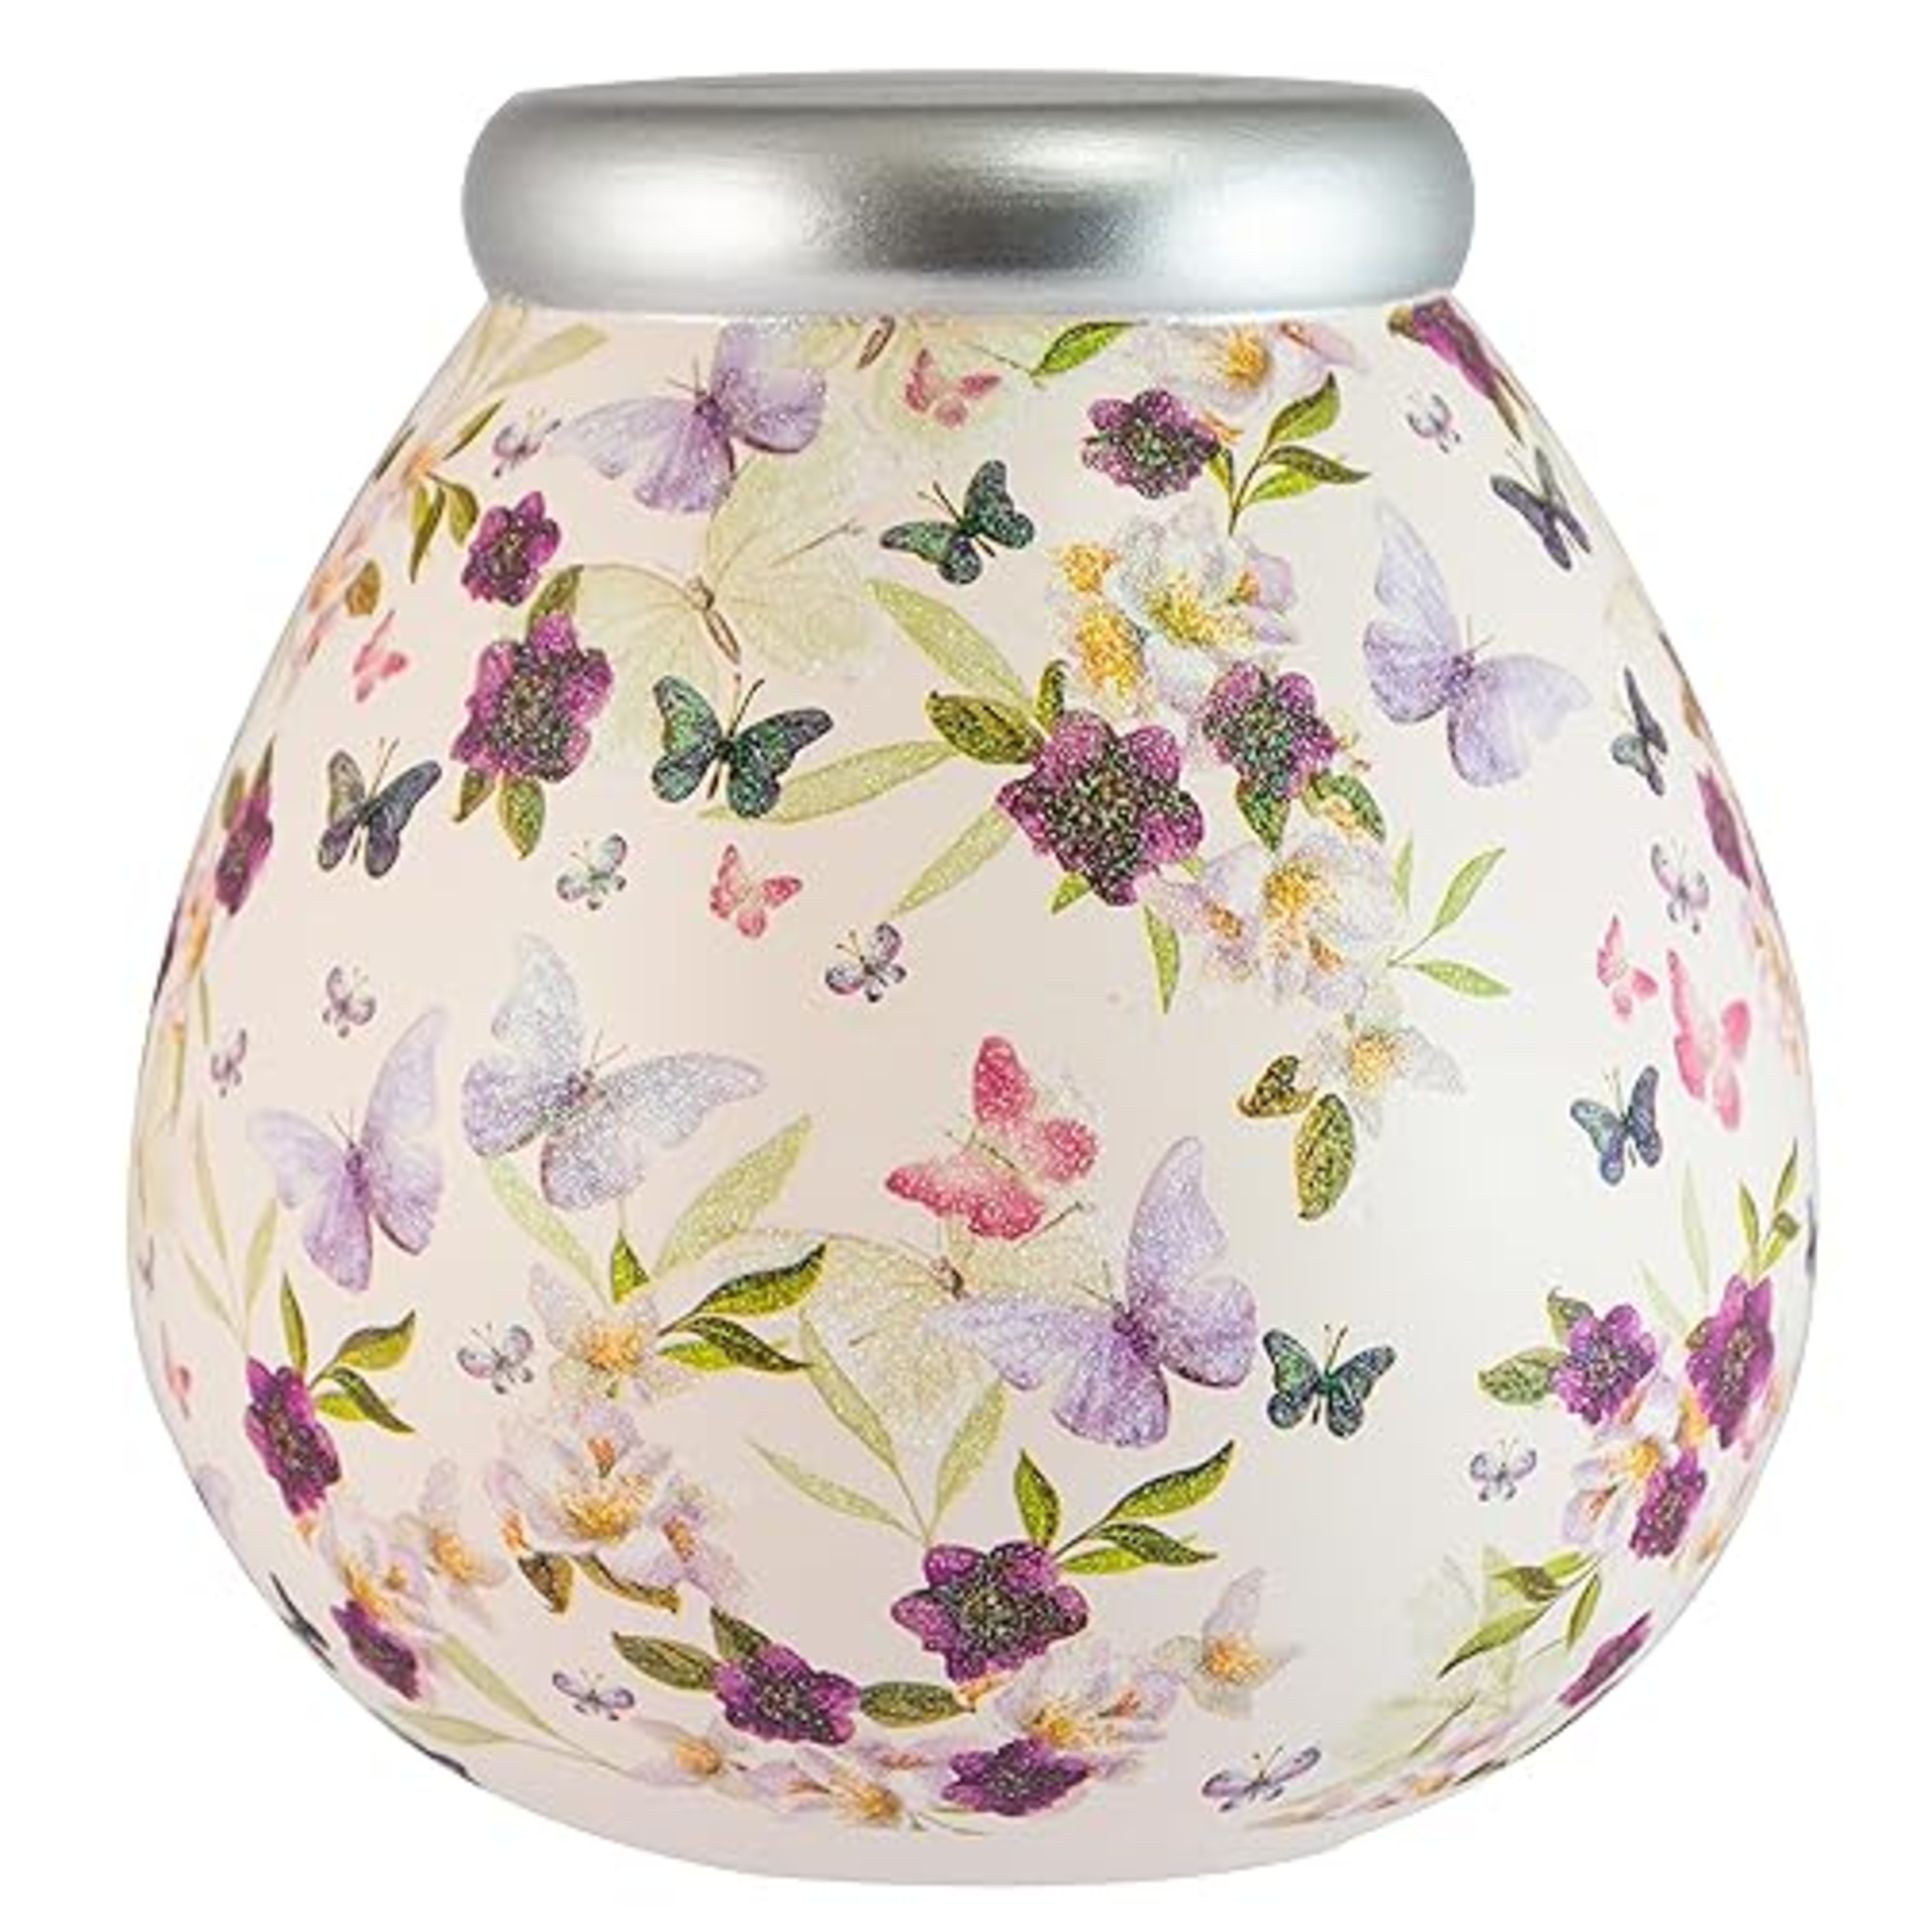 Pot Of Dreams Box | Butterfly Florals Money Pot | Break to Open Piggy Bank | Amusing Saving Jar or 